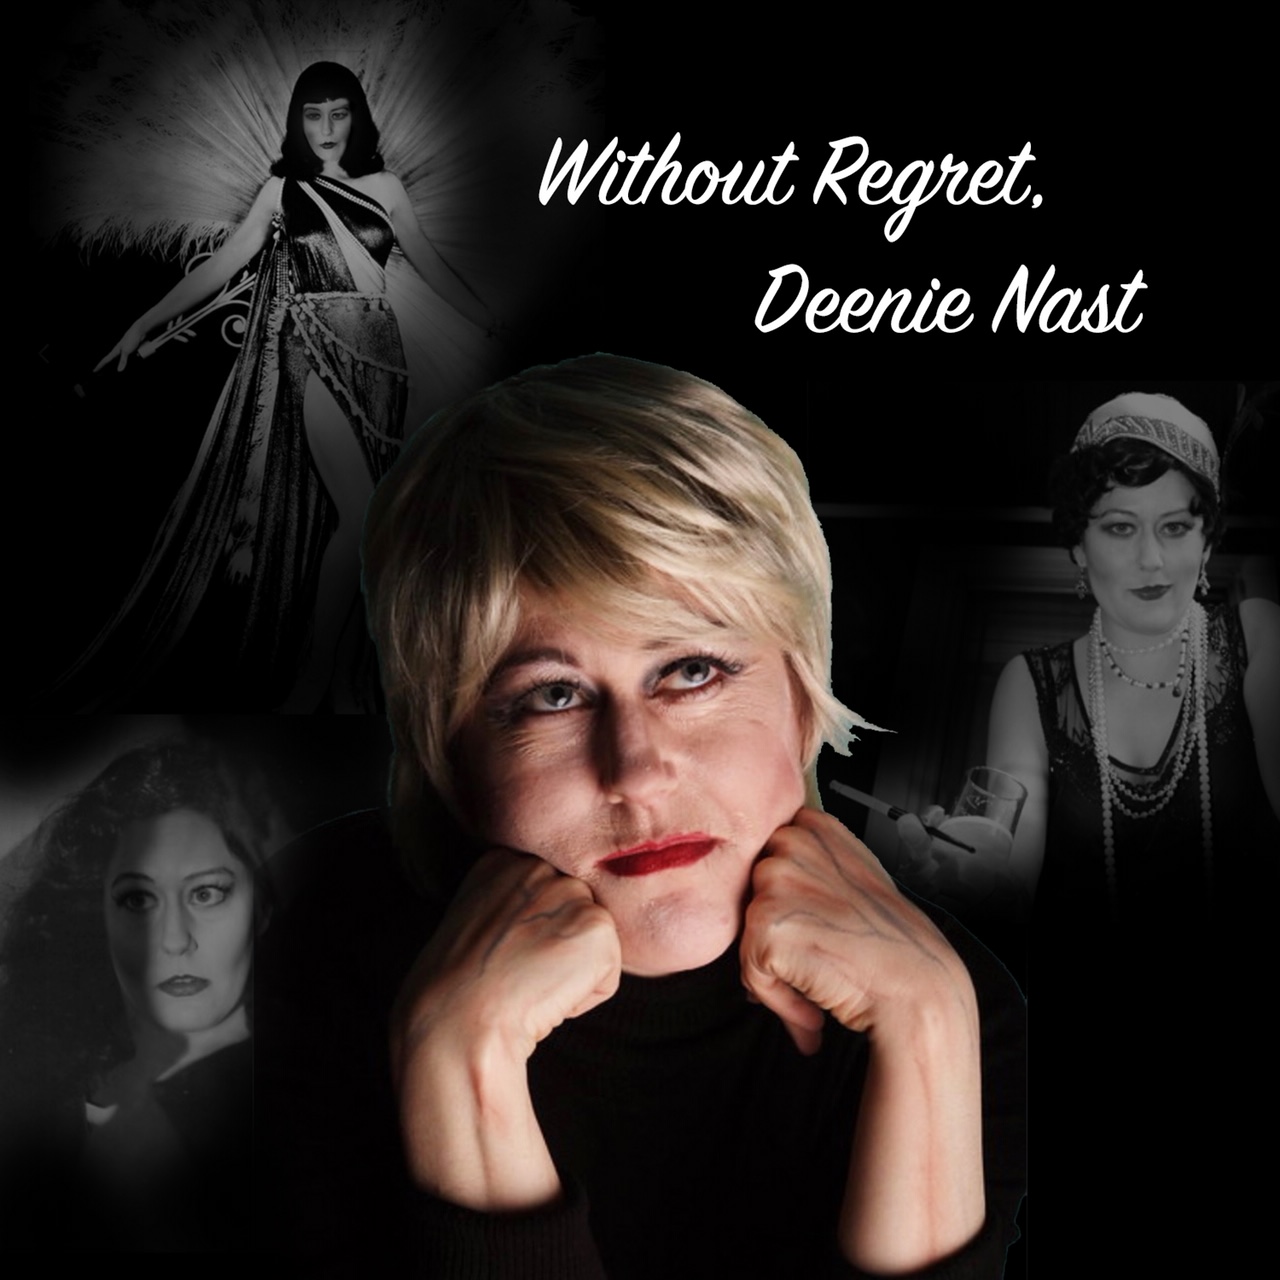 Deenie Nast has no regrets do you?
Design by Maya
Photos by Darien DeCosta and Bram Mueller